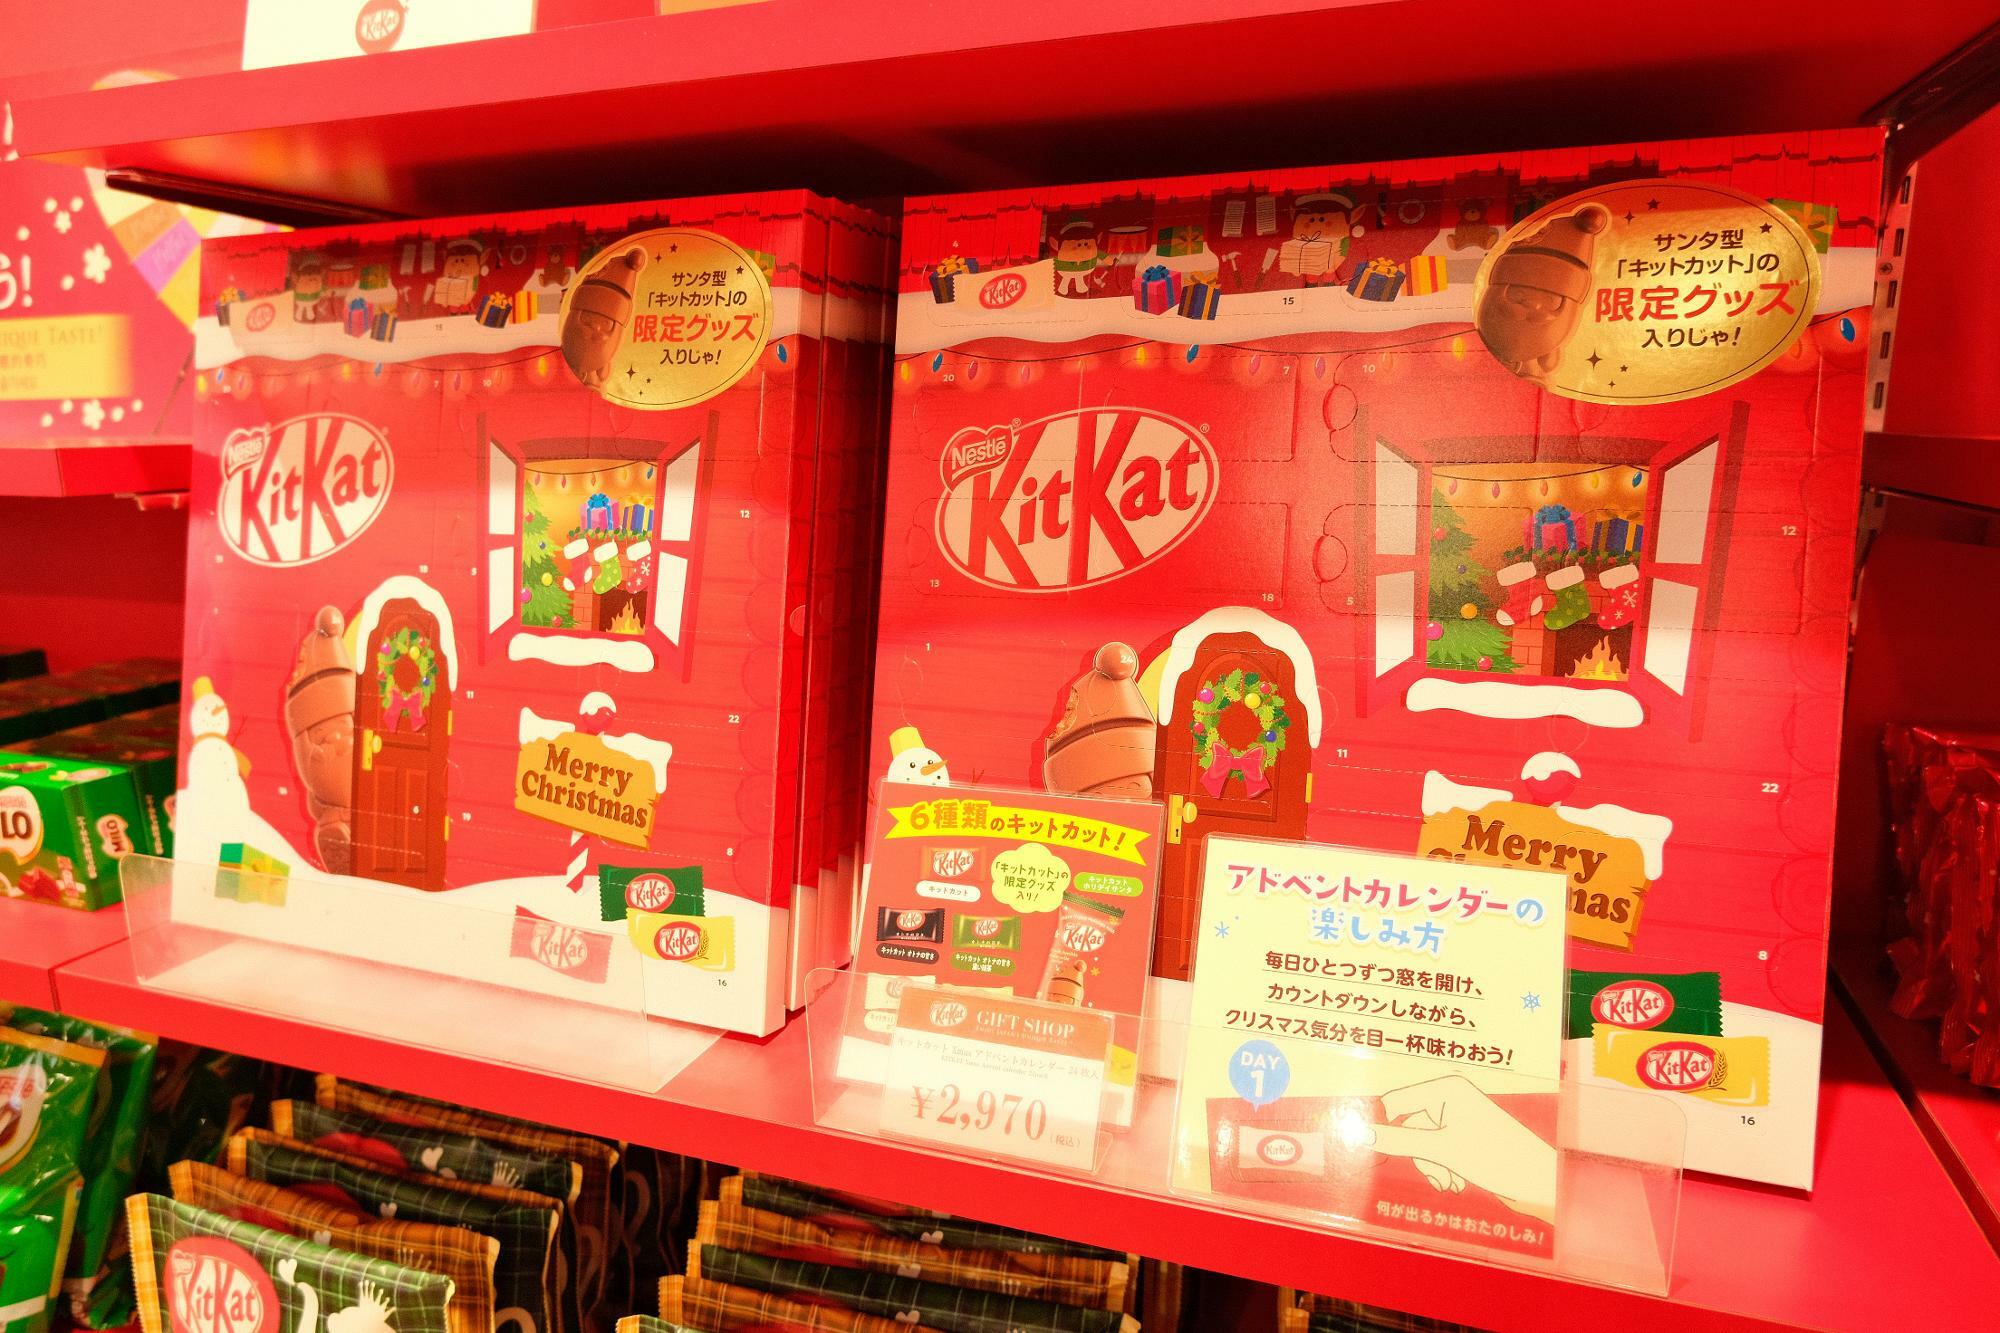 「キットカット クリスマスアドベントカレンダー」 24枚入り 2970円(税込)